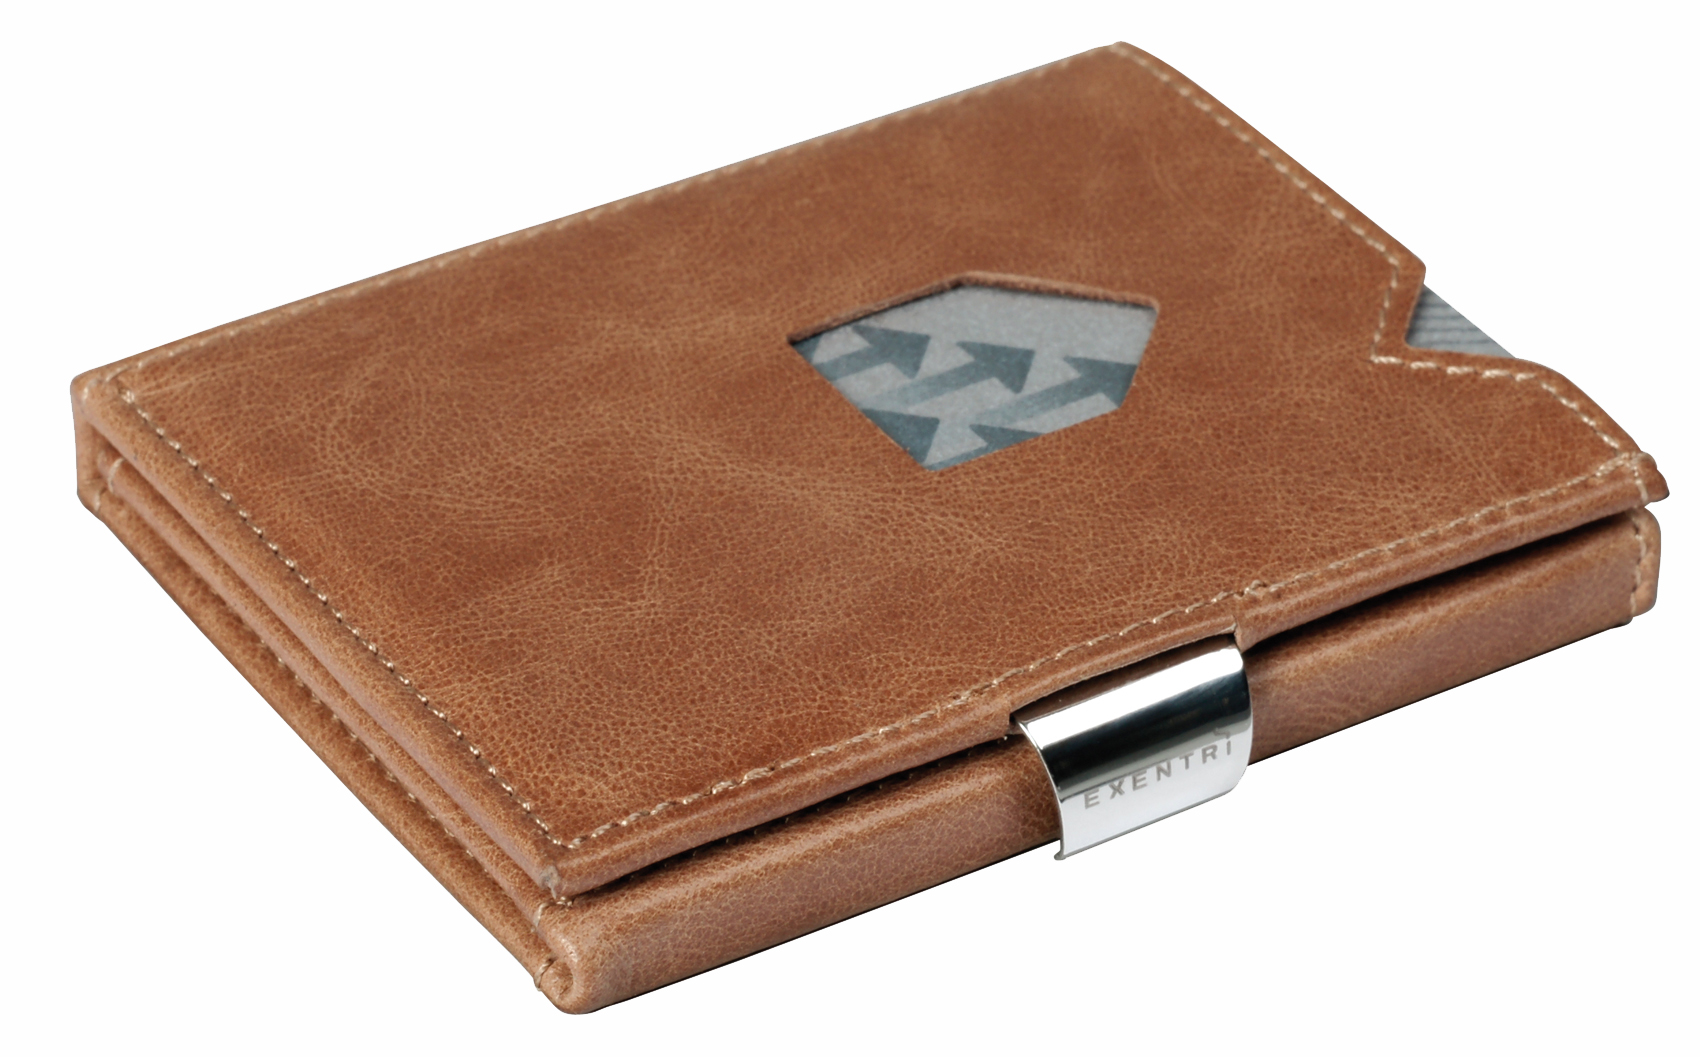 Exentri Sand Smart plånbok/korthållare